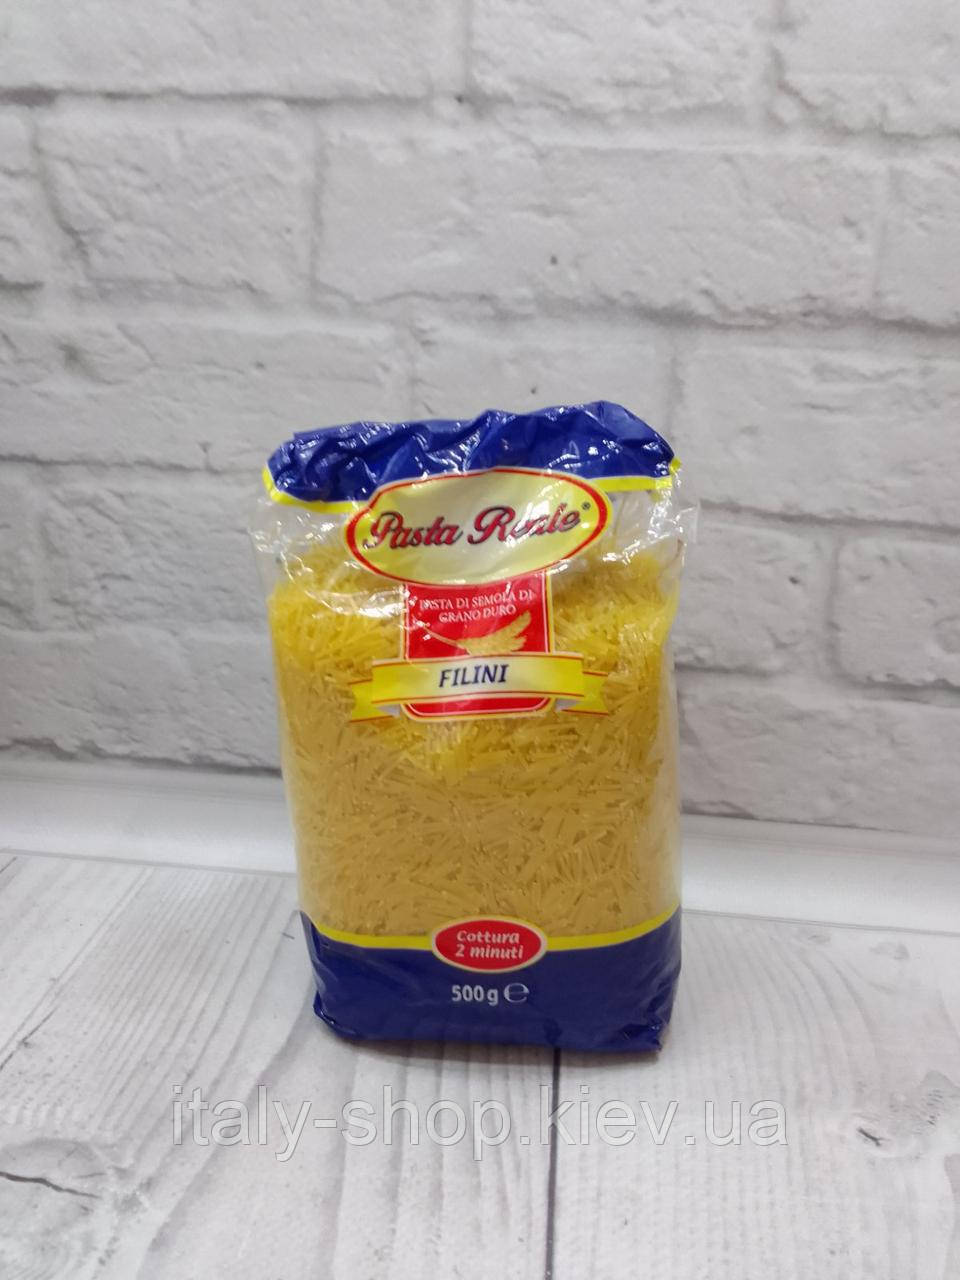 Макарони Pasta Reale Filini без яєць з твердих сортів пшениці для внутрішнього ринку Італії 500g